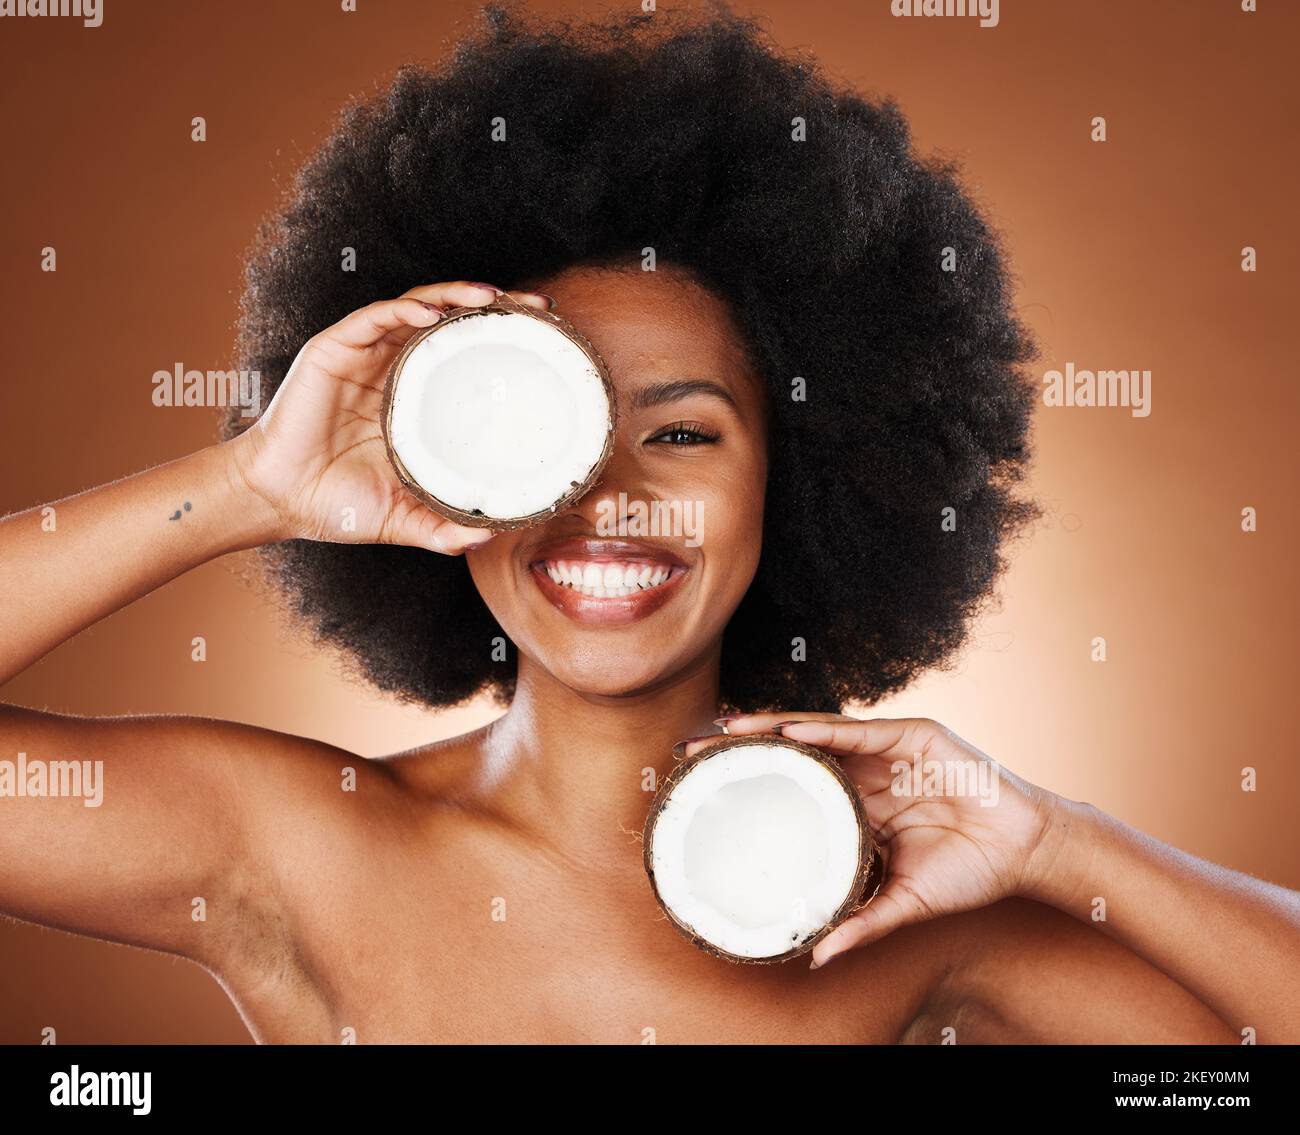 Kokosnuss, Studio und schwarze Frau natürliches Gesicht, Hautpflege und Haar Promotion mit Mockup für gesunde Lebensmittel oder Produktmarketing. Afrikanisches Musterportrait Stockfoto